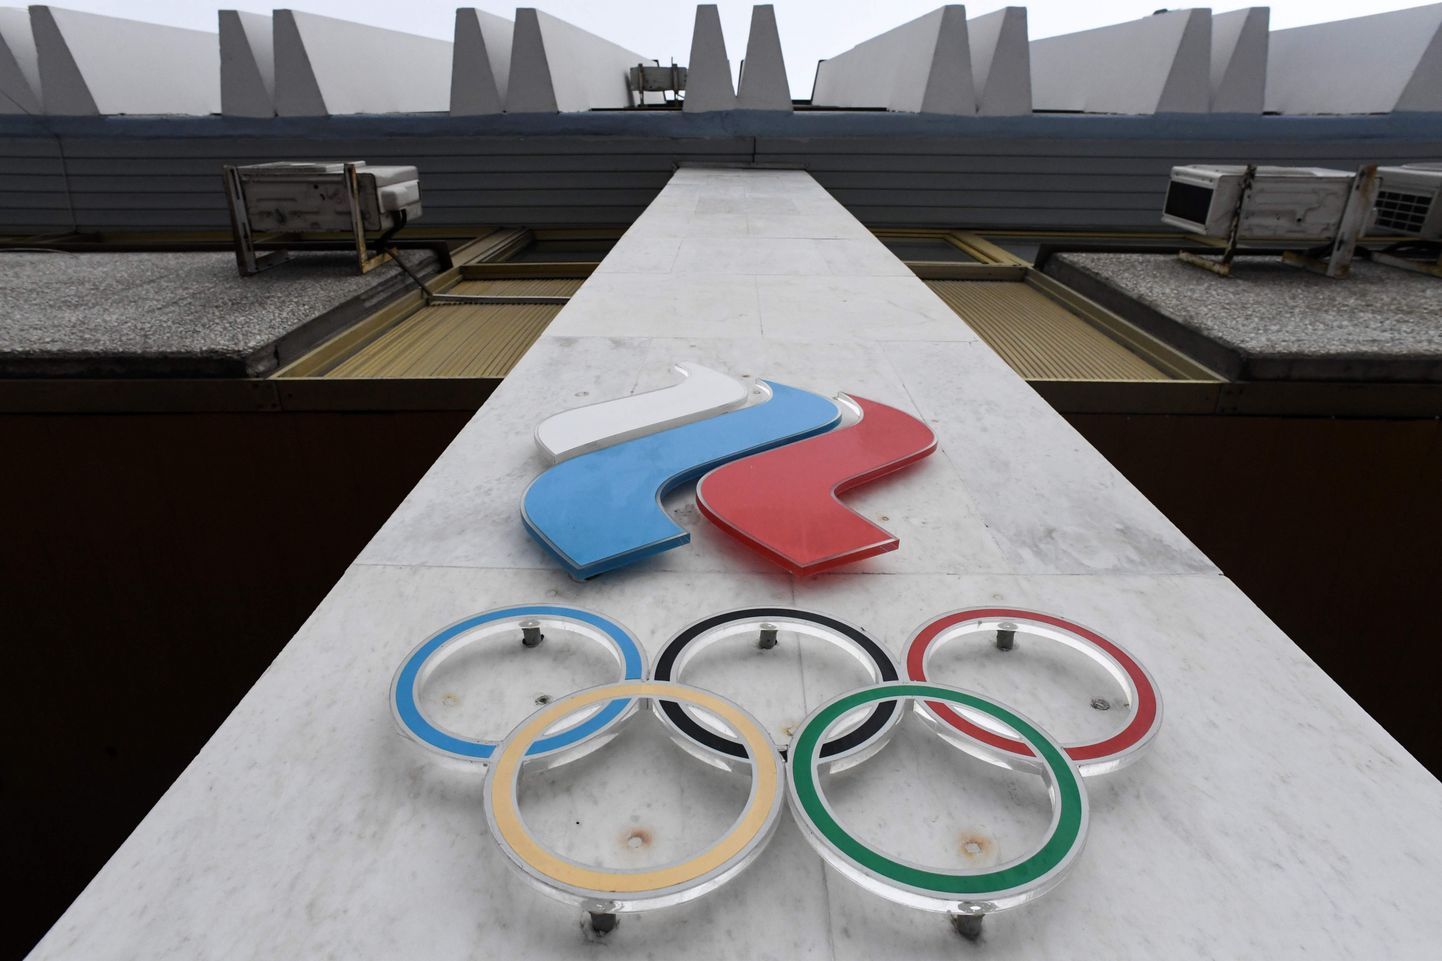 "Нечего нашим чиновникам ездить на Олимпиады, правильно их дисквалифицировали, деньги целее будут".